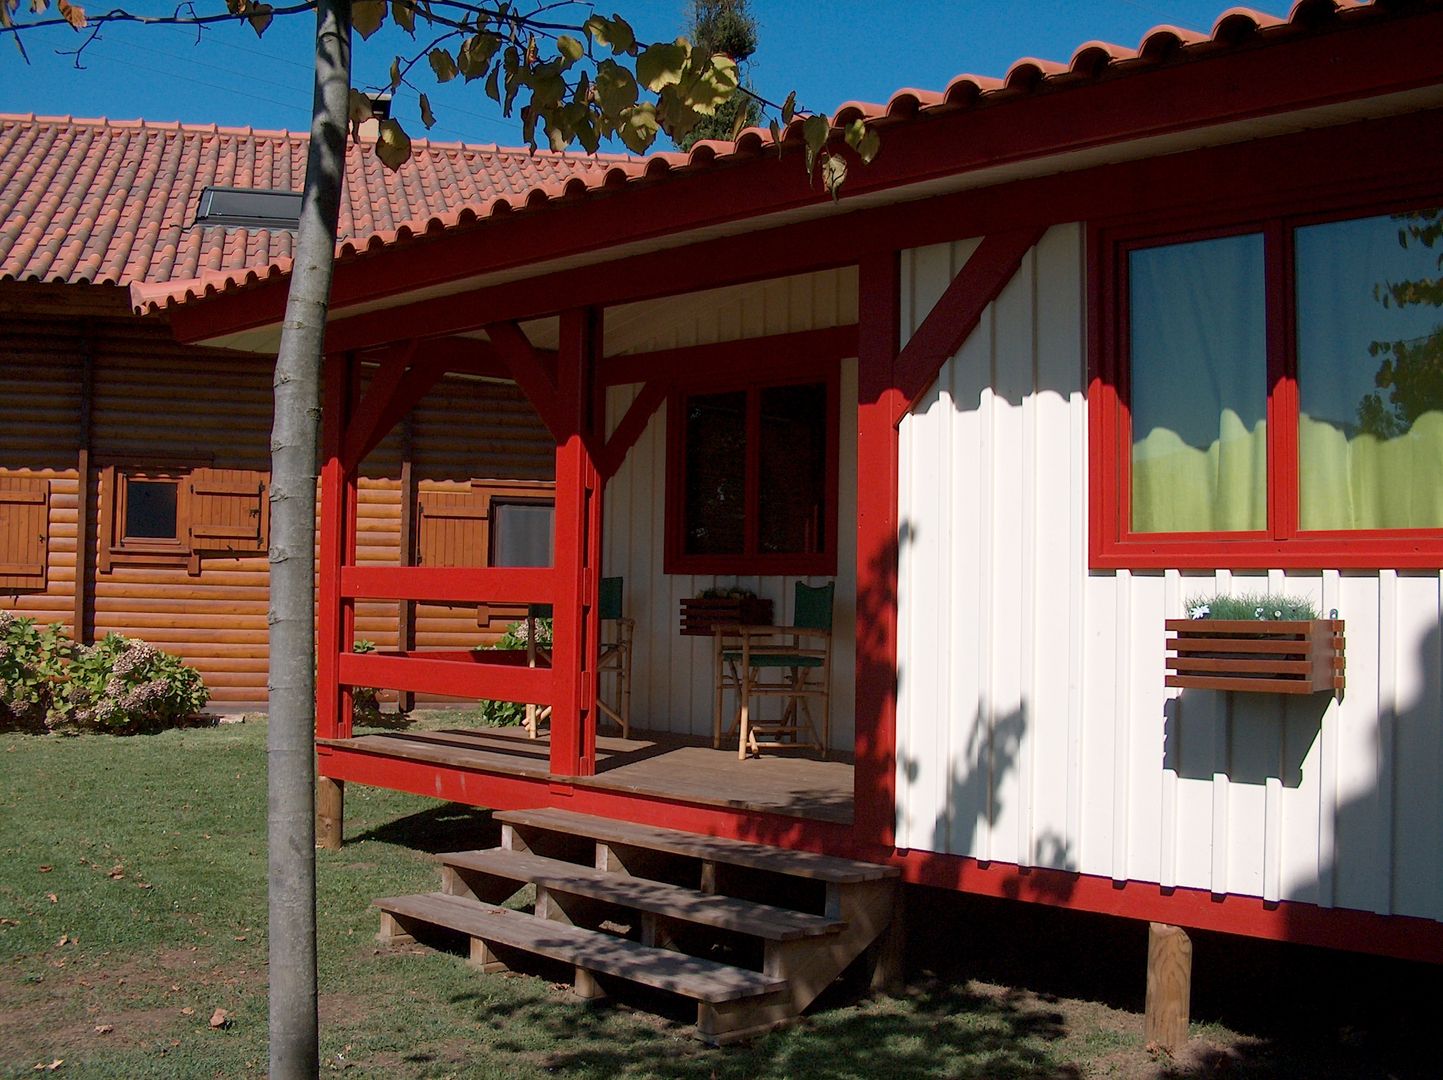 RUSTICASA | Casa Eco | Vila Nova de Cerveira, RUSTICASA RUSTICASA Wooden houses Wood Wood effect